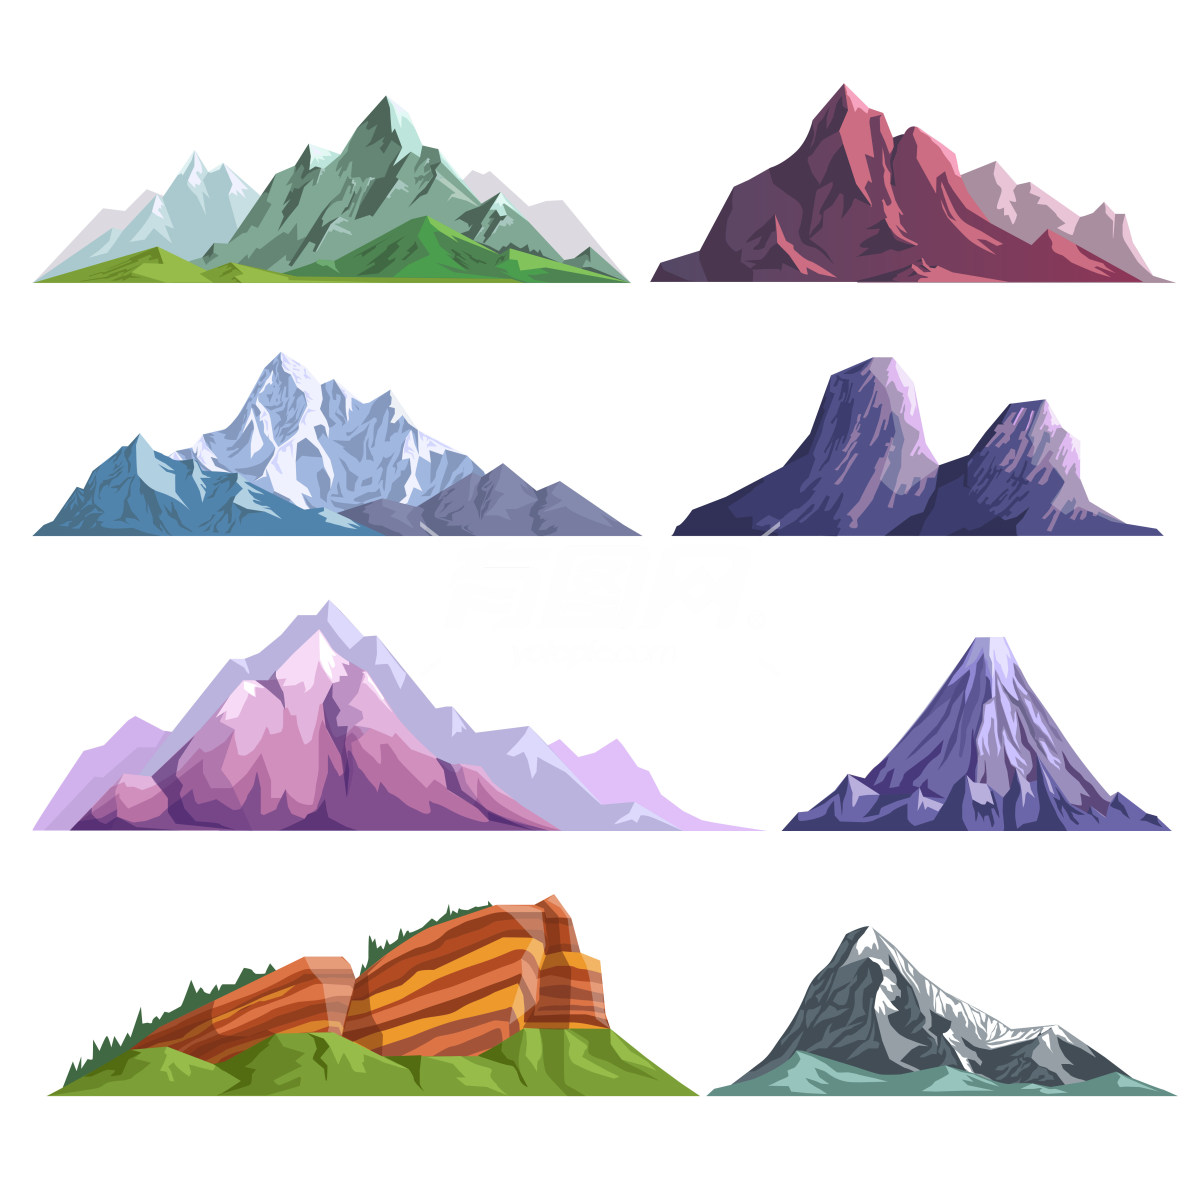 不同形状和颜色的山峰的插画